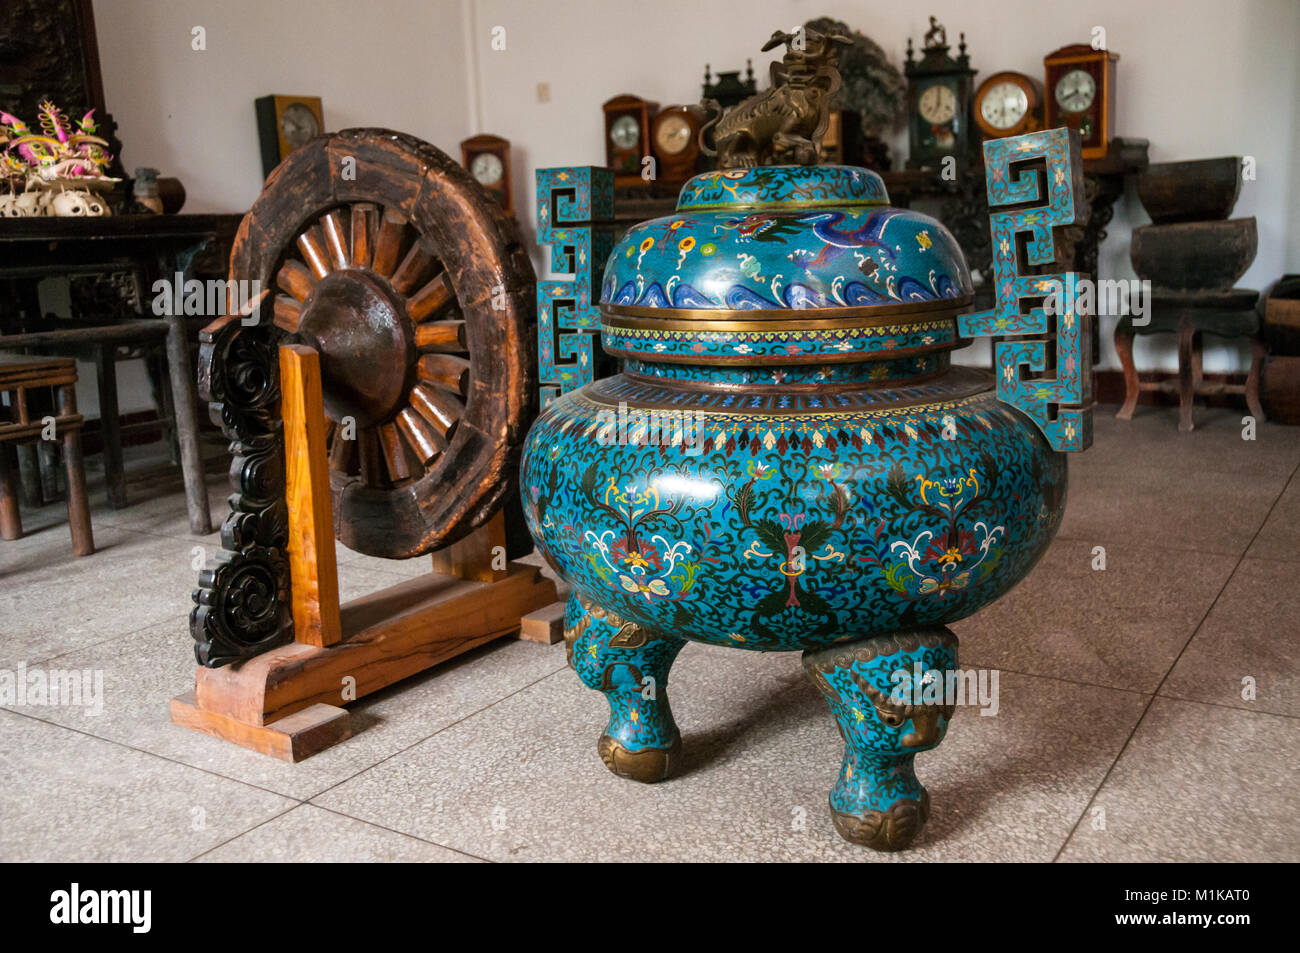 Un URN e ruota in legno con vecchi orologi in background. Parte di Wu Jianguo della collezione di antichi si trova nella zona rurale di Xi'an. Foto Stock